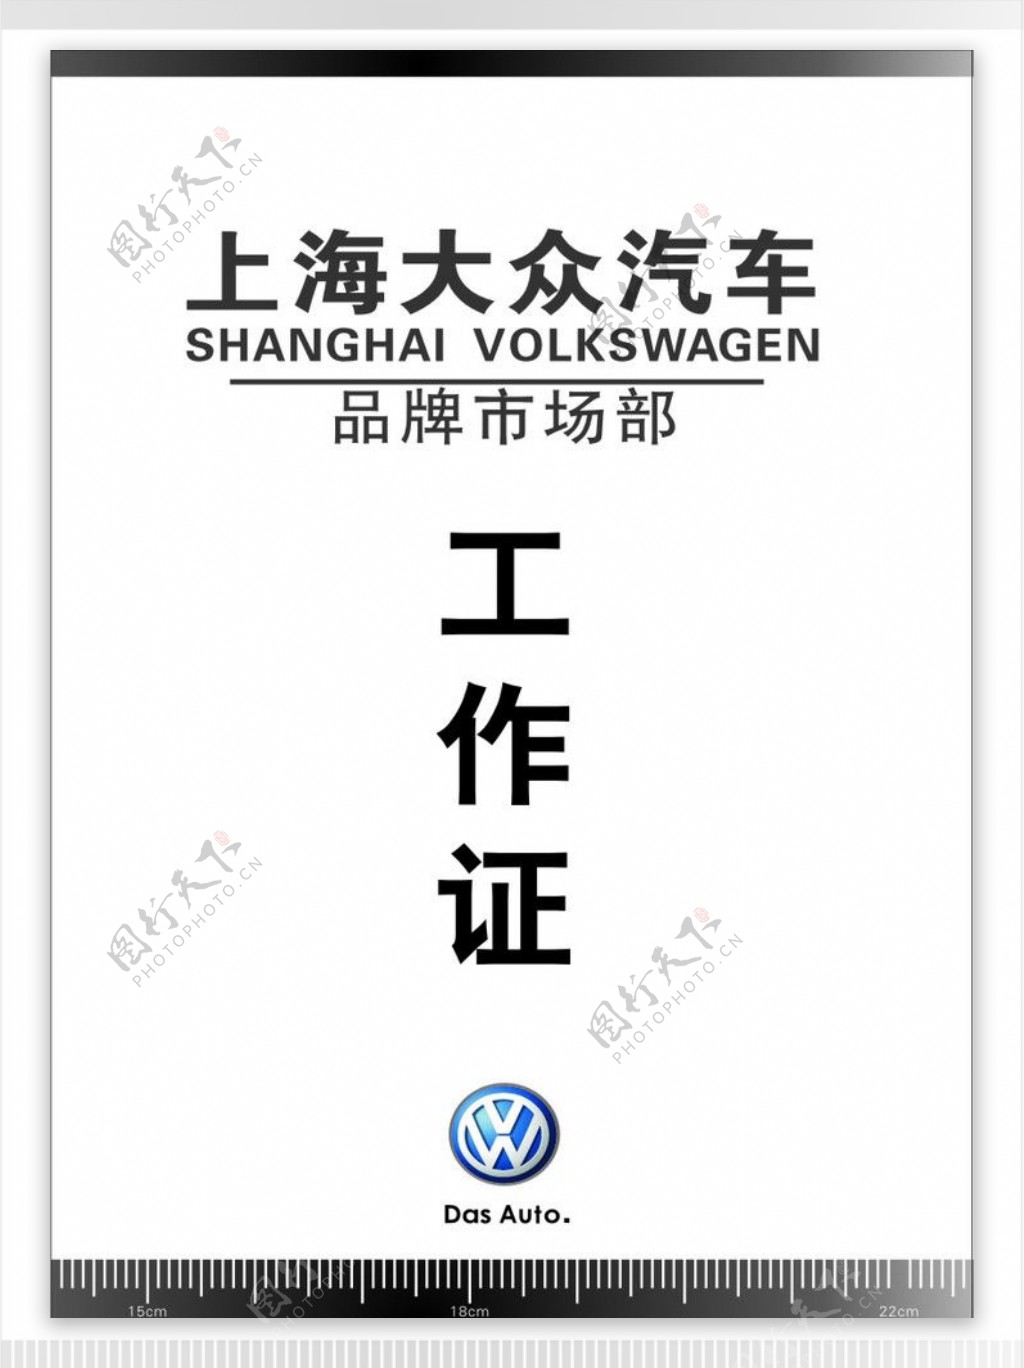 上海大众汽车品牌市场部工作证